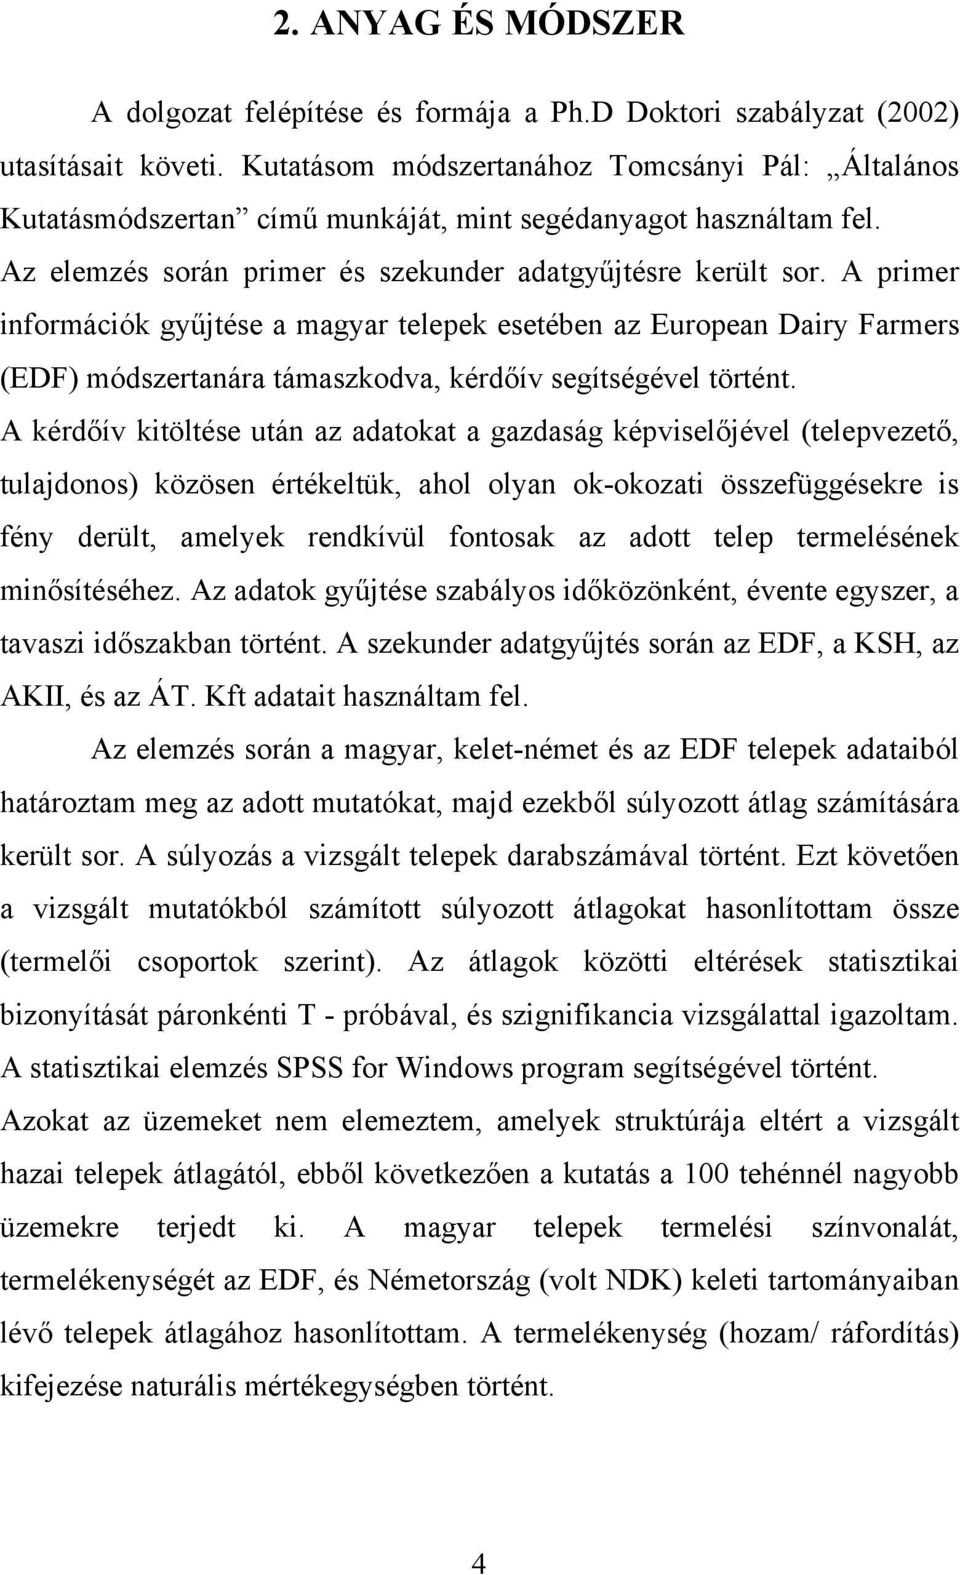 A primer információk gyűjtése a magyar telepek esetében az European Dairy Farmers (EDF) módszertanára támaszkodva, kérdőív segítségével történt.